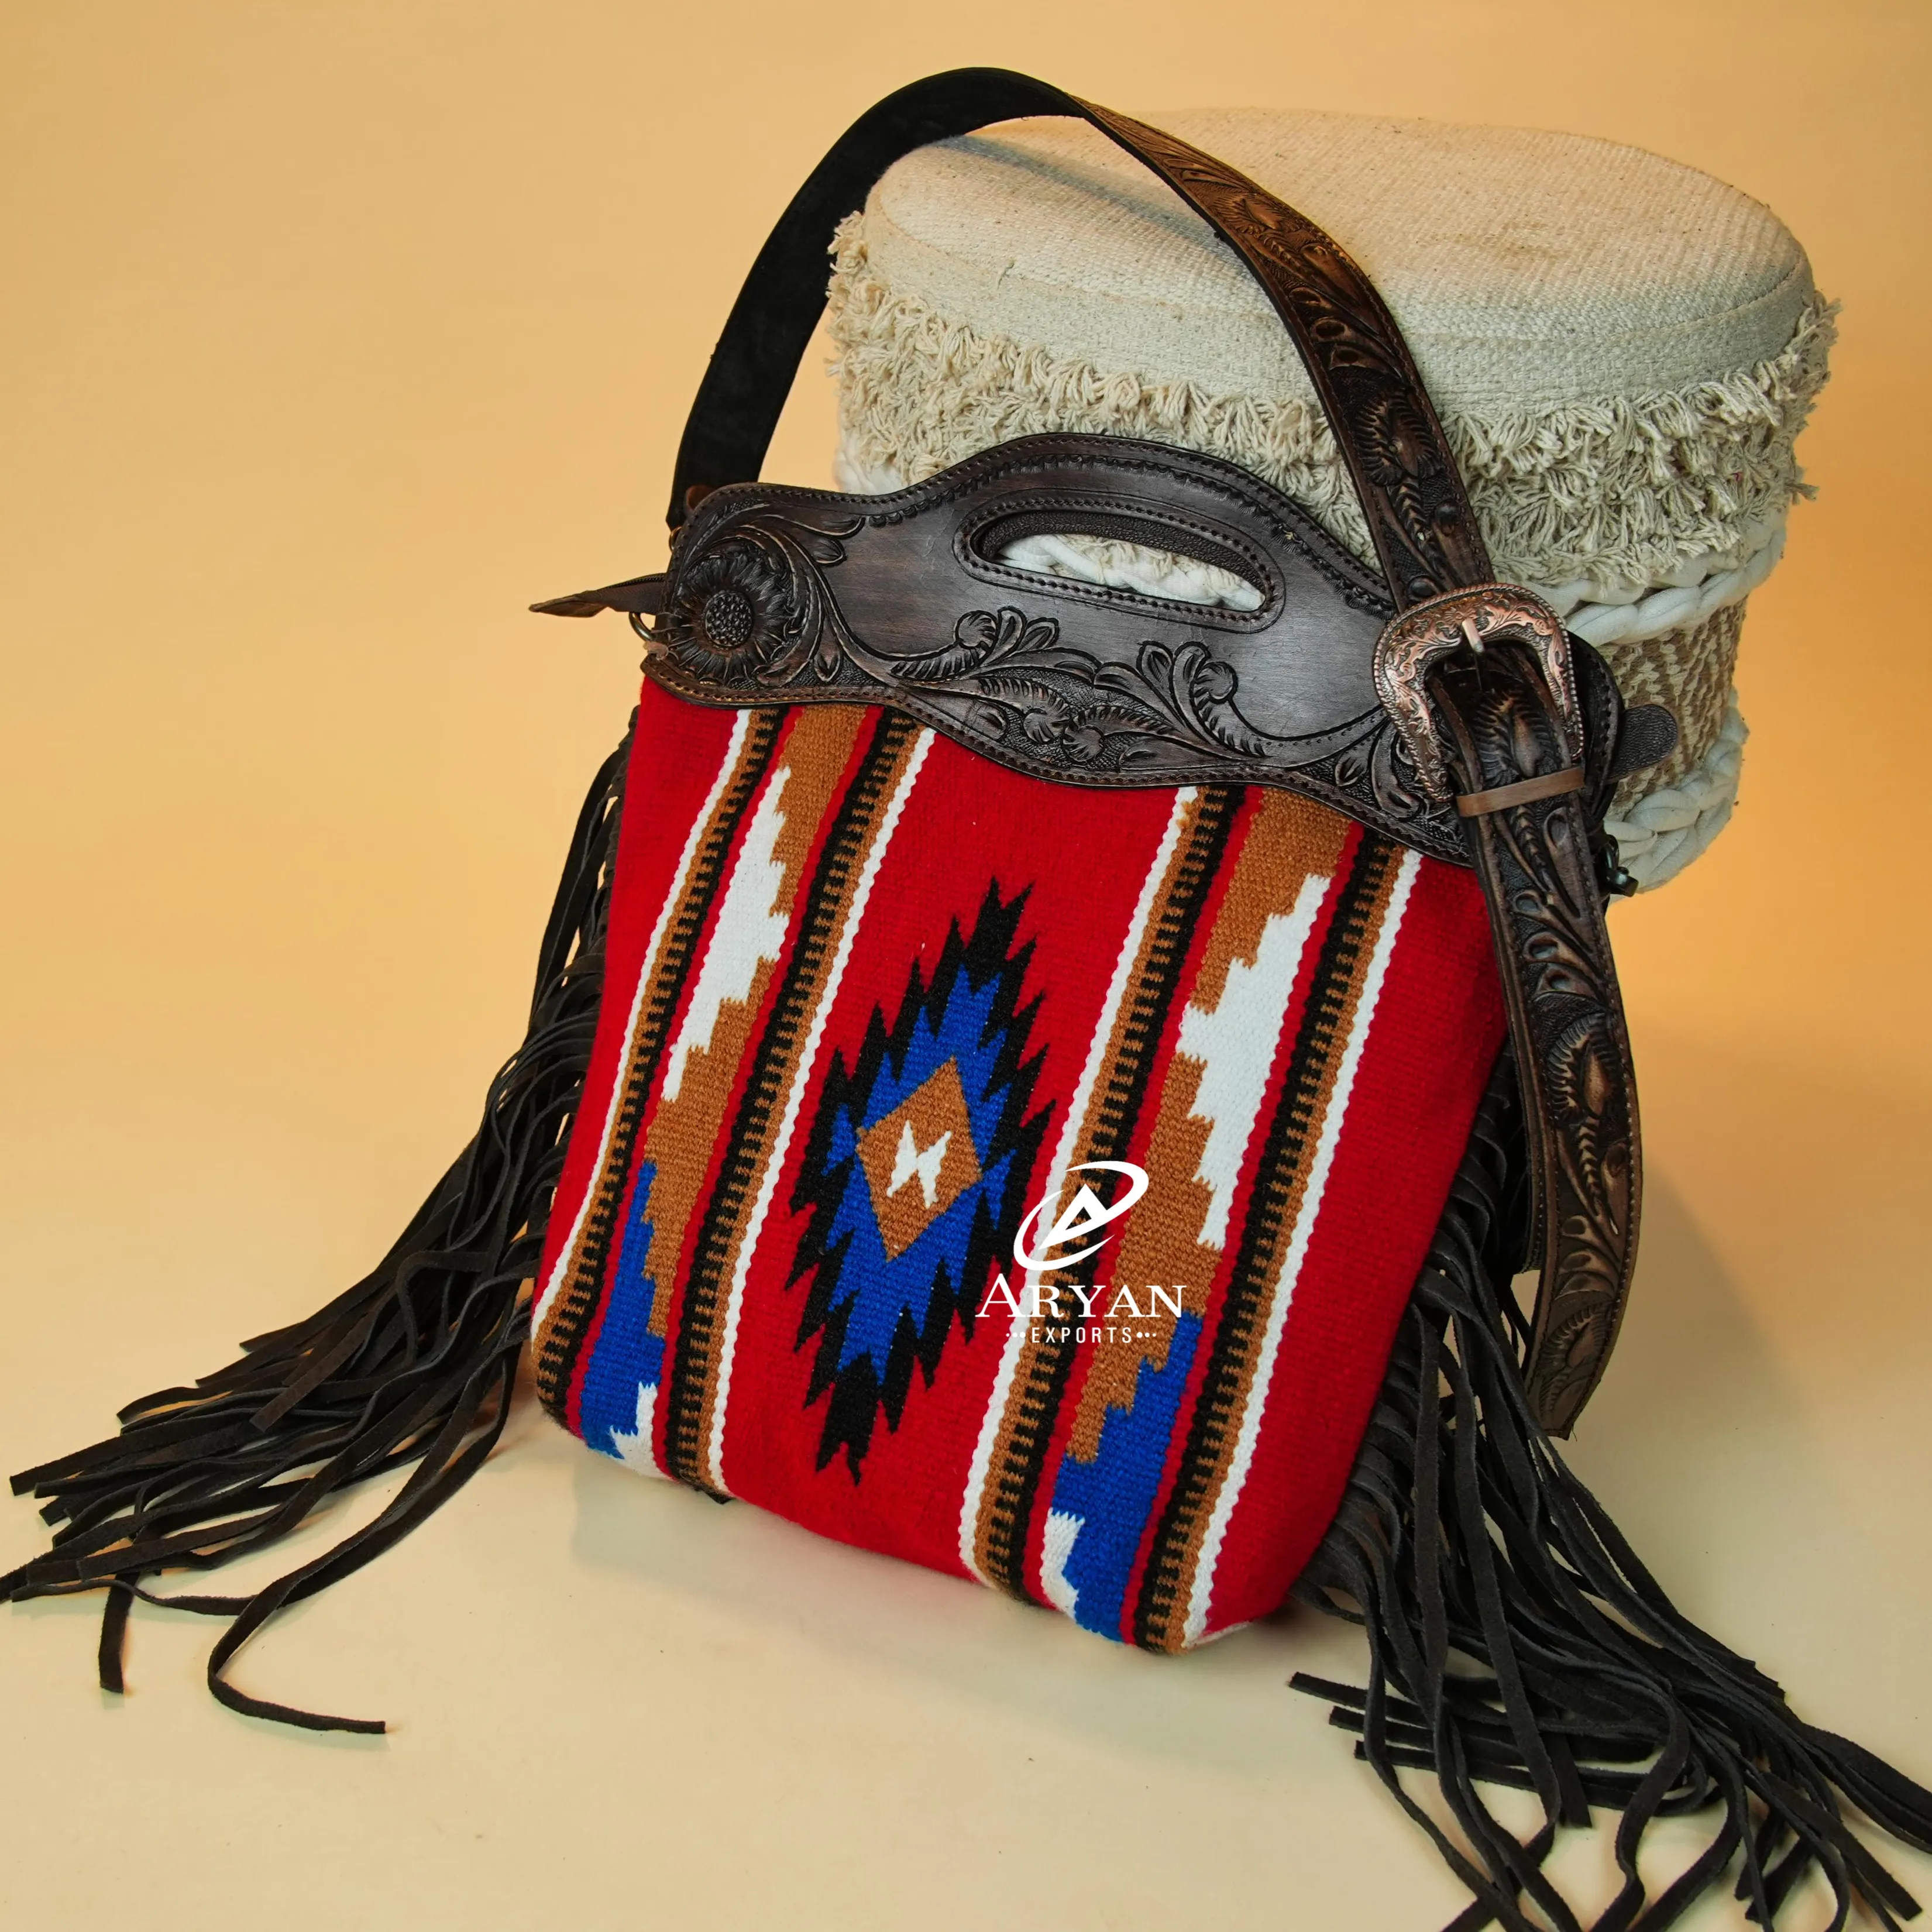 Yeni varış el Tooled Fringe çanta Aztec eyer battaniye kolu tek kollu çanta Bohemian tasarımcı kadınlar için sıcak satış şık çanta